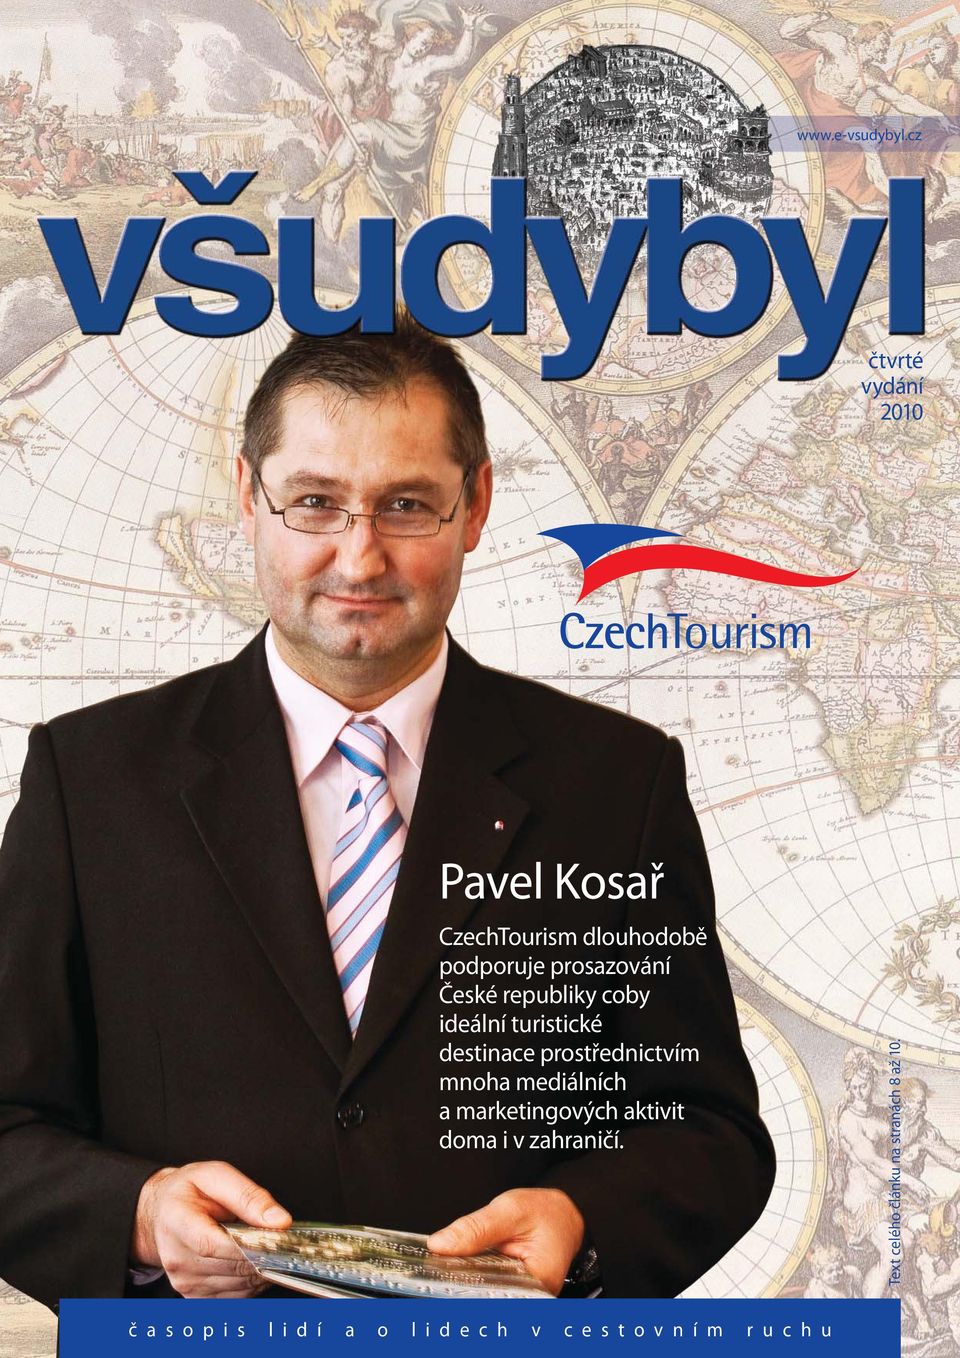 České republiky coby ideální turistické destinace prostřednictvím mnoha mediálních